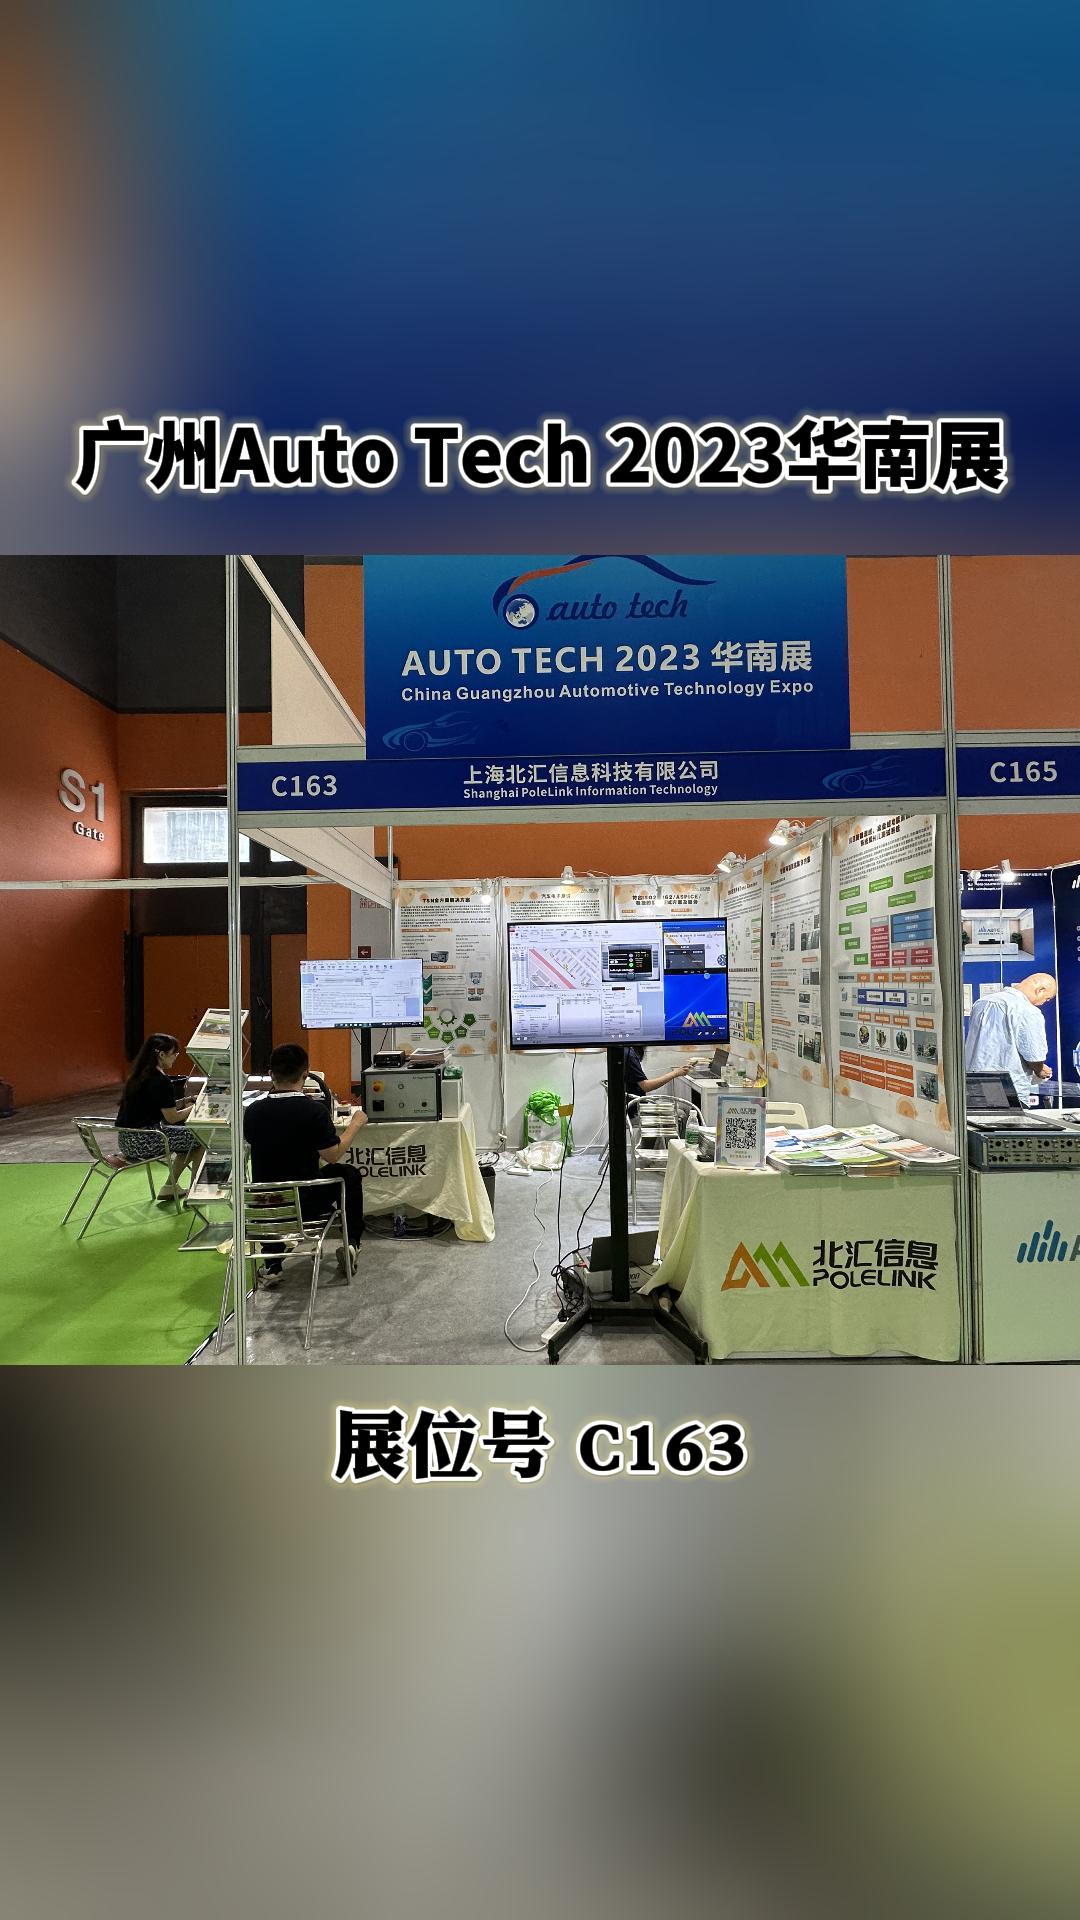 广州我们来了，AUTO TECH 2023华南展来找北汇信息展台吧#汽车电子 